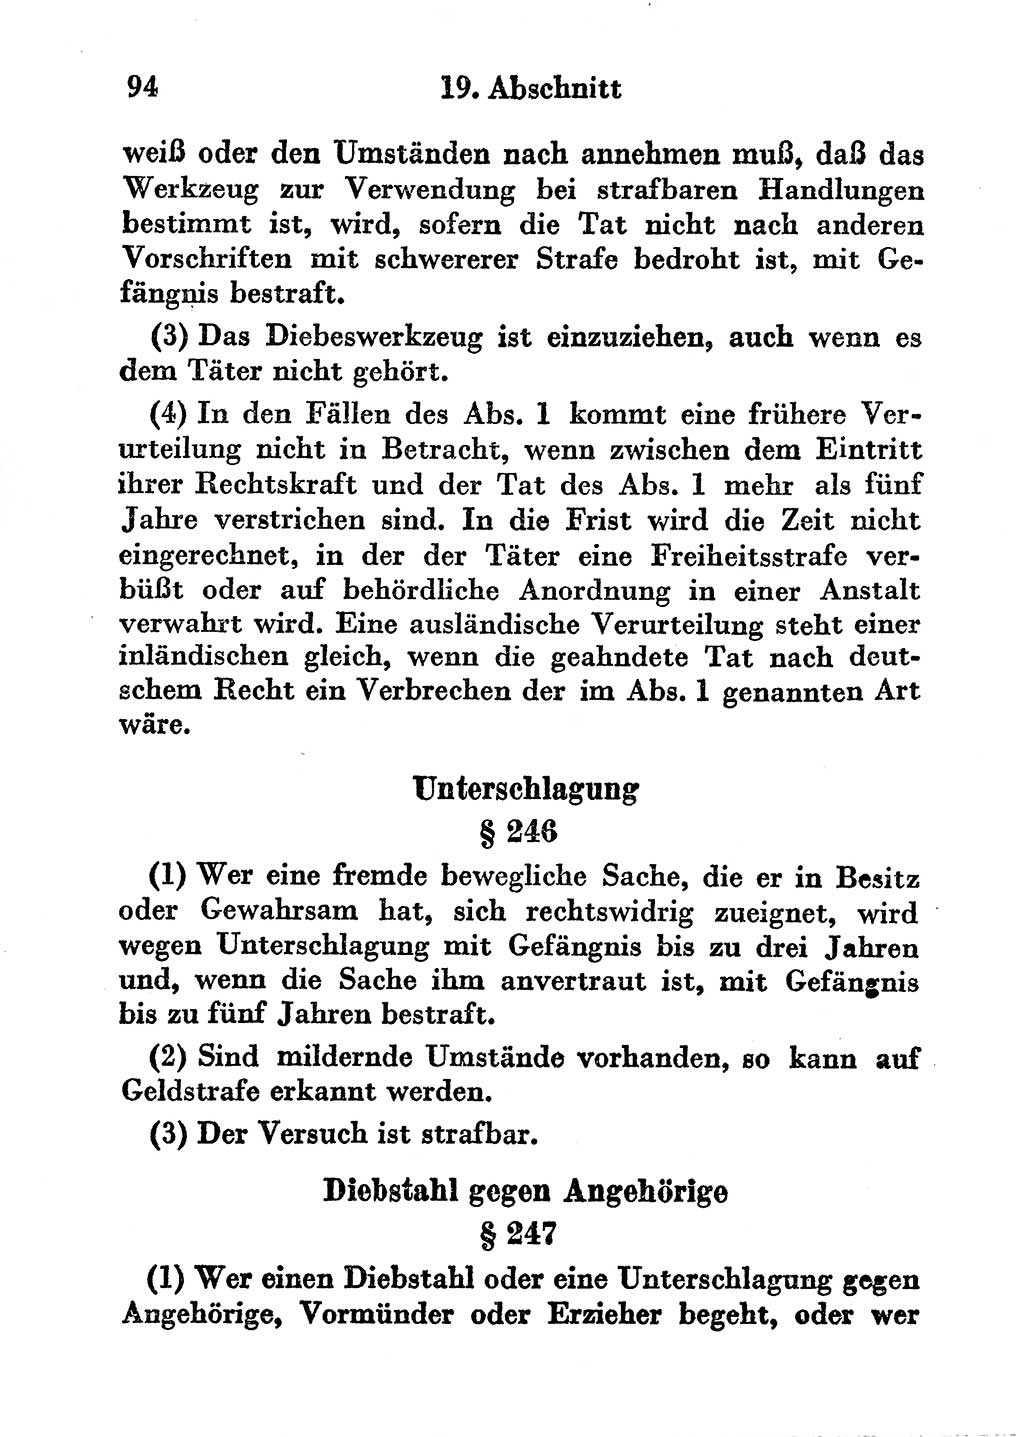 Strafgesetzbuch (StGB) und andere Strafgesetze [Deutsche Demokratische Republik (DDR)] 1956, Seite 94 (StGB Strafges. DDR 1956, S. 94)